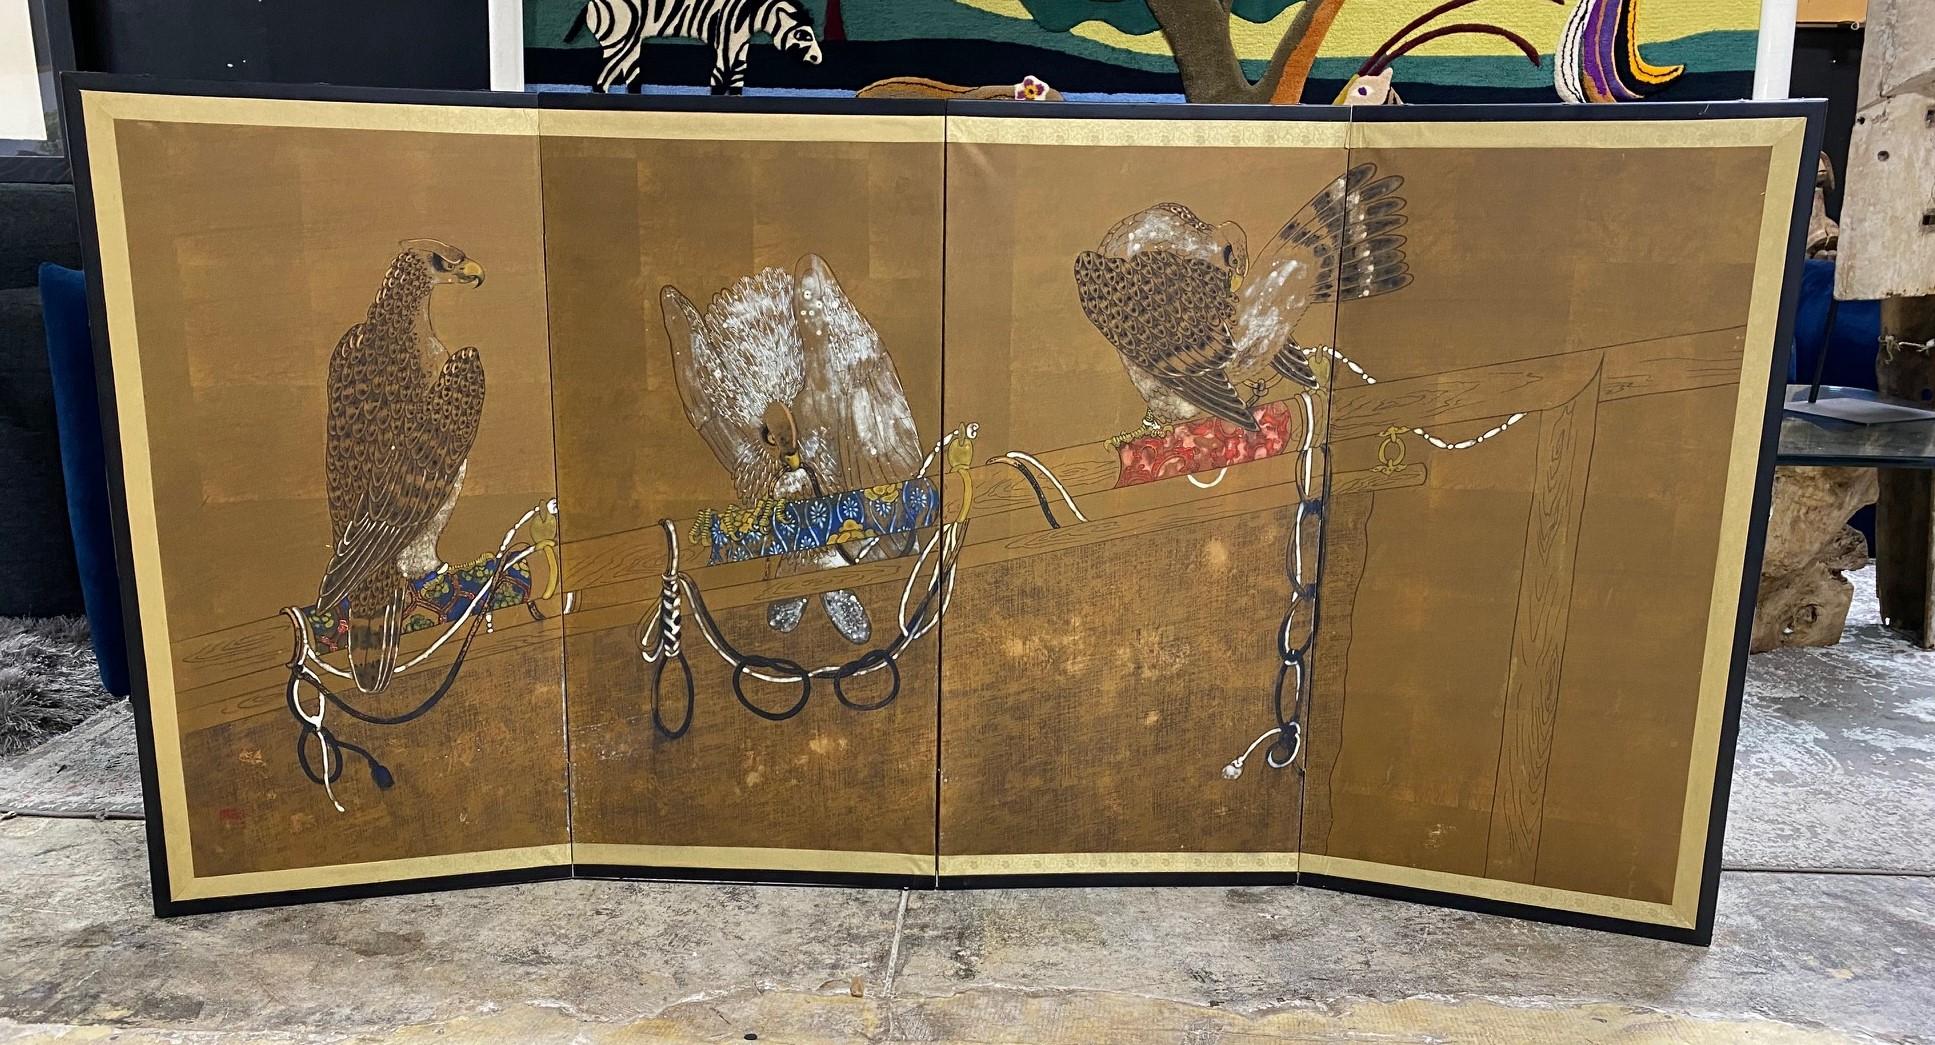 Magnifique paravent japonais Byobu à quatre panneaux représentant trois oiseaux de chasse apprivoisés et attachés - faucons ou éperviers (Foldes) - assis sur leur perchoir. Les riches couleurs, les feuilles d'or et les magnifiques détails peints à